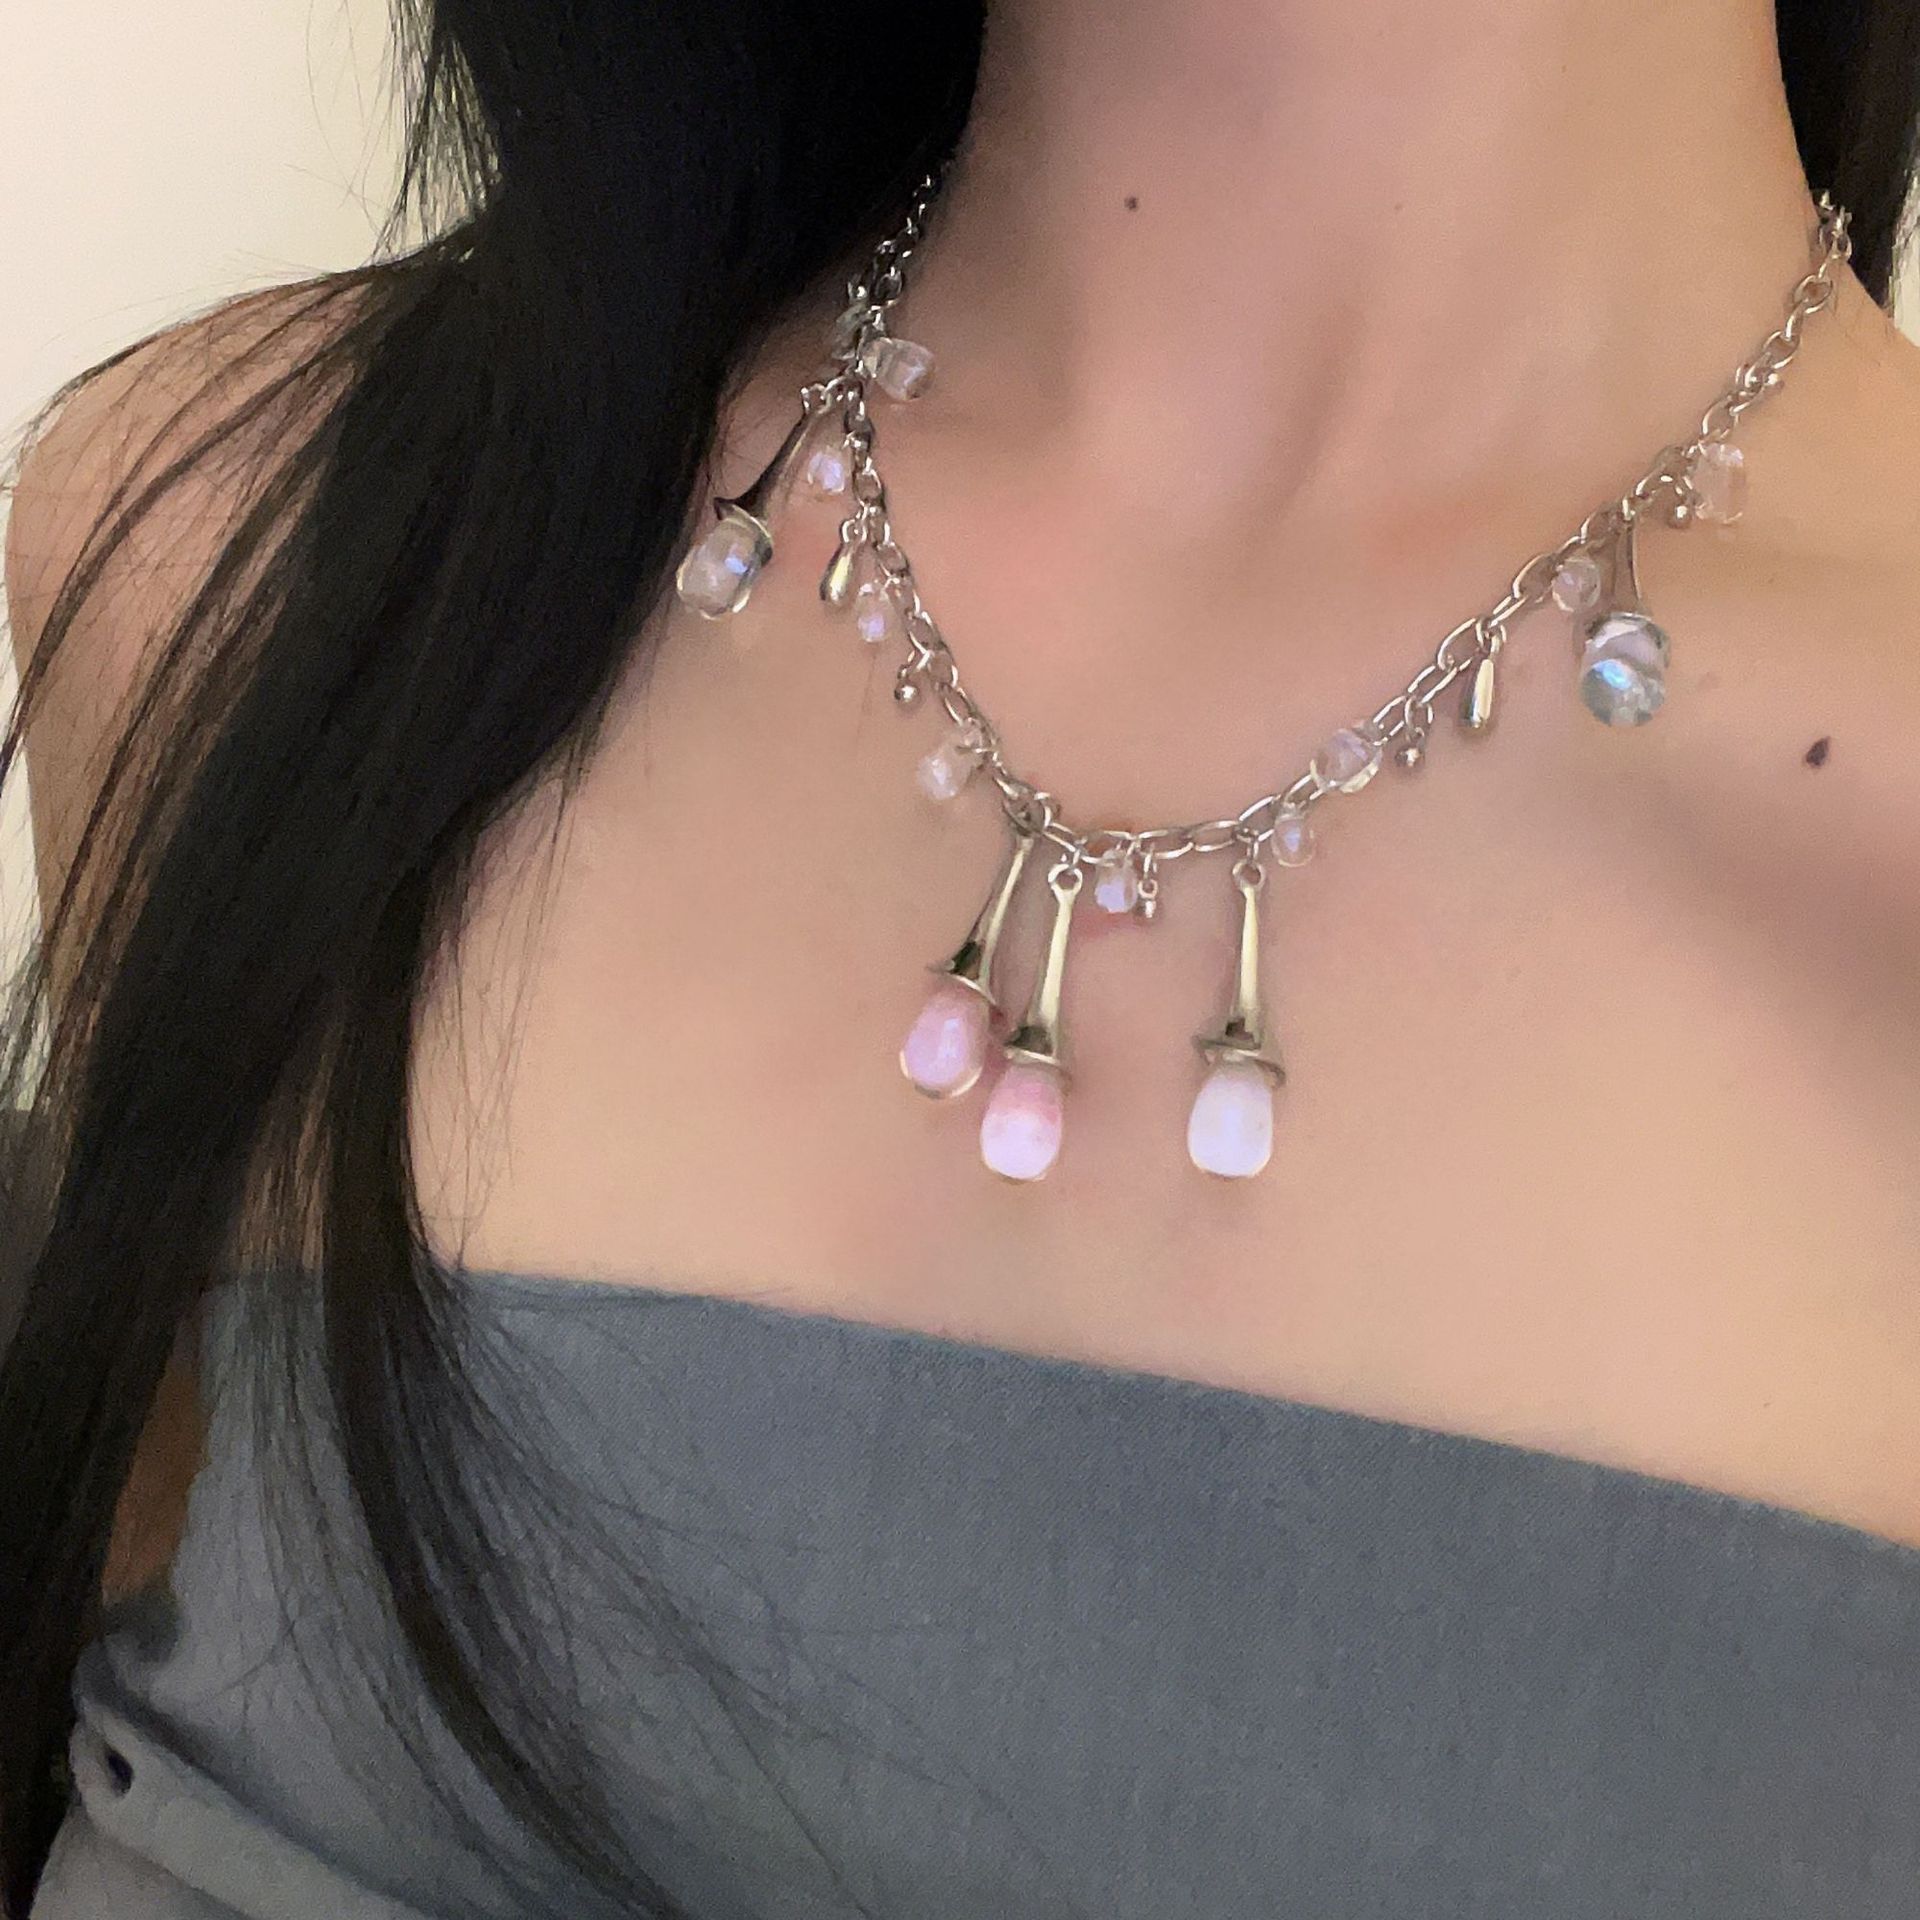 4:Necklace transparent